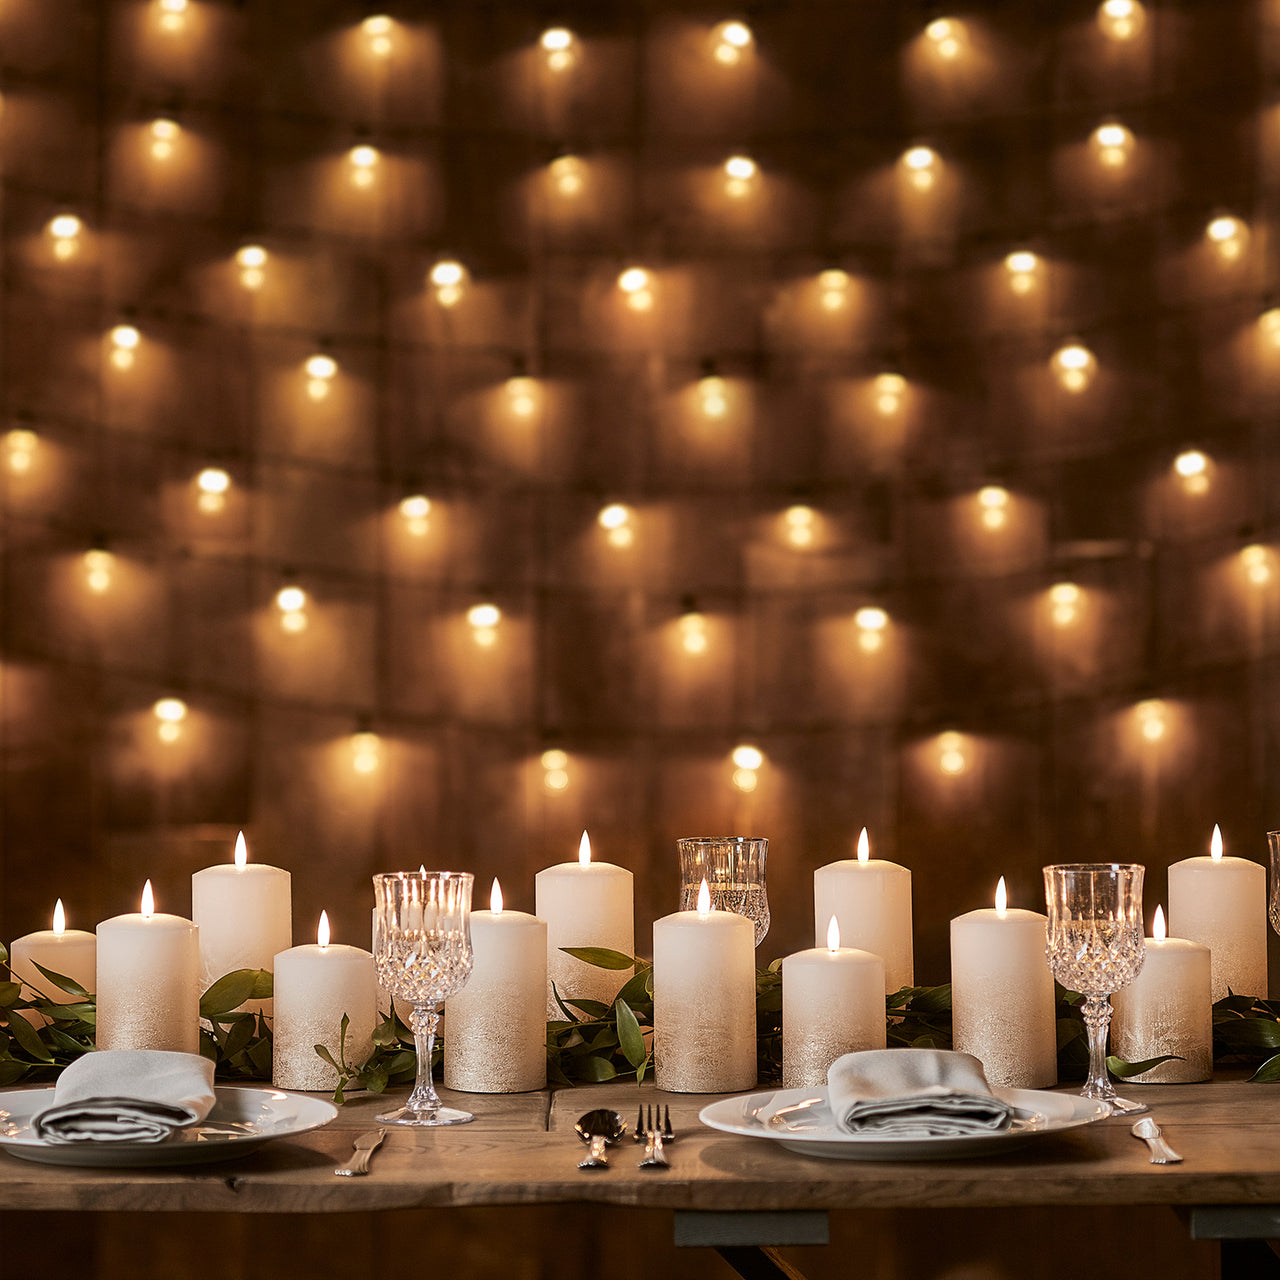 Eine Kollektion aus Bronze-Kerzen in verschiedenen Größen auf gedecktem Tisch.